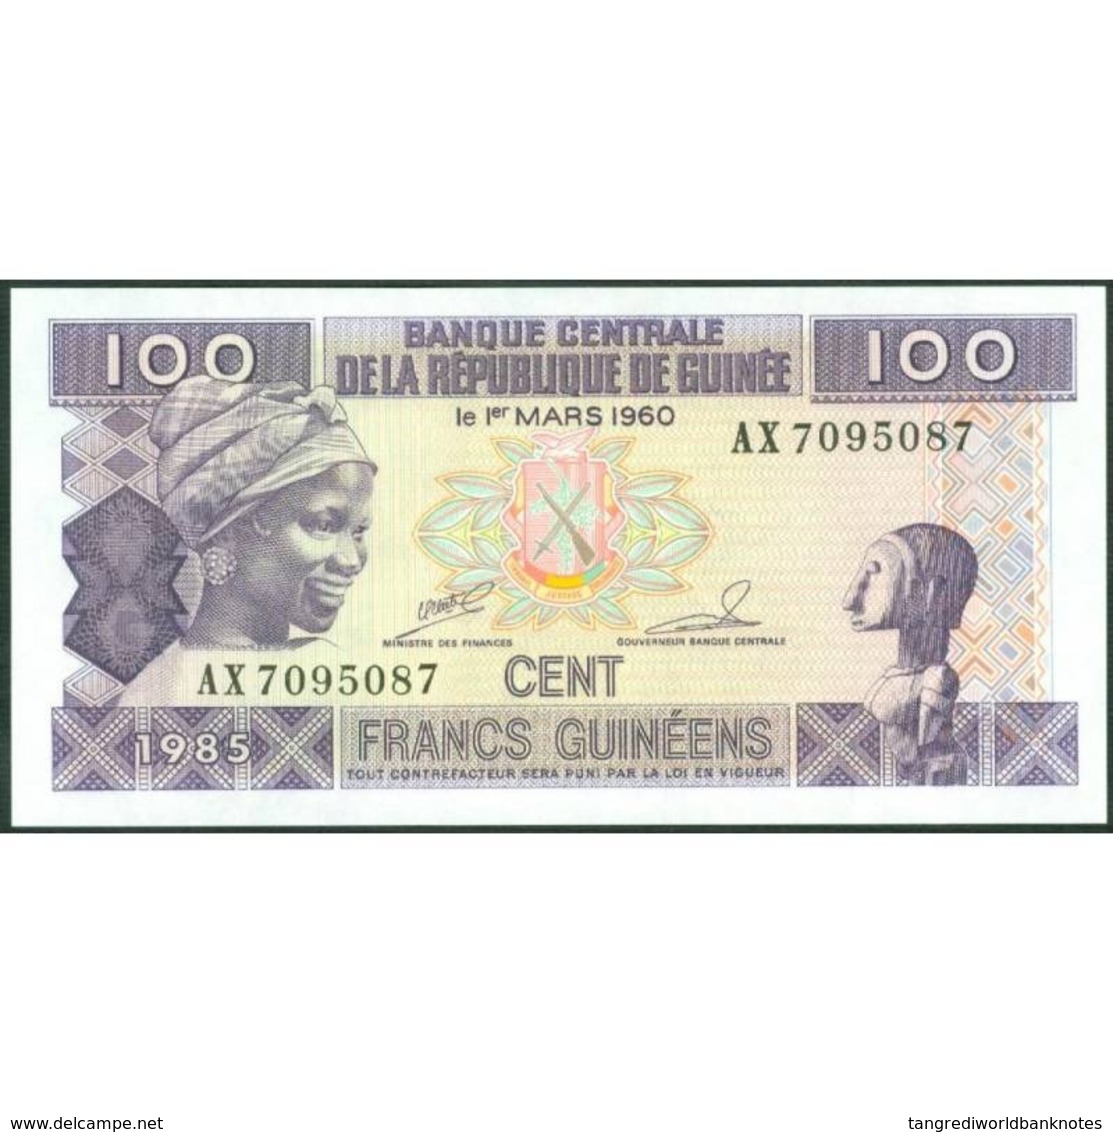 TWN - GUINEA 30a2 - 100 Francs 1985 Prefix AX - Without Serifs﻿ UNC - Guinee